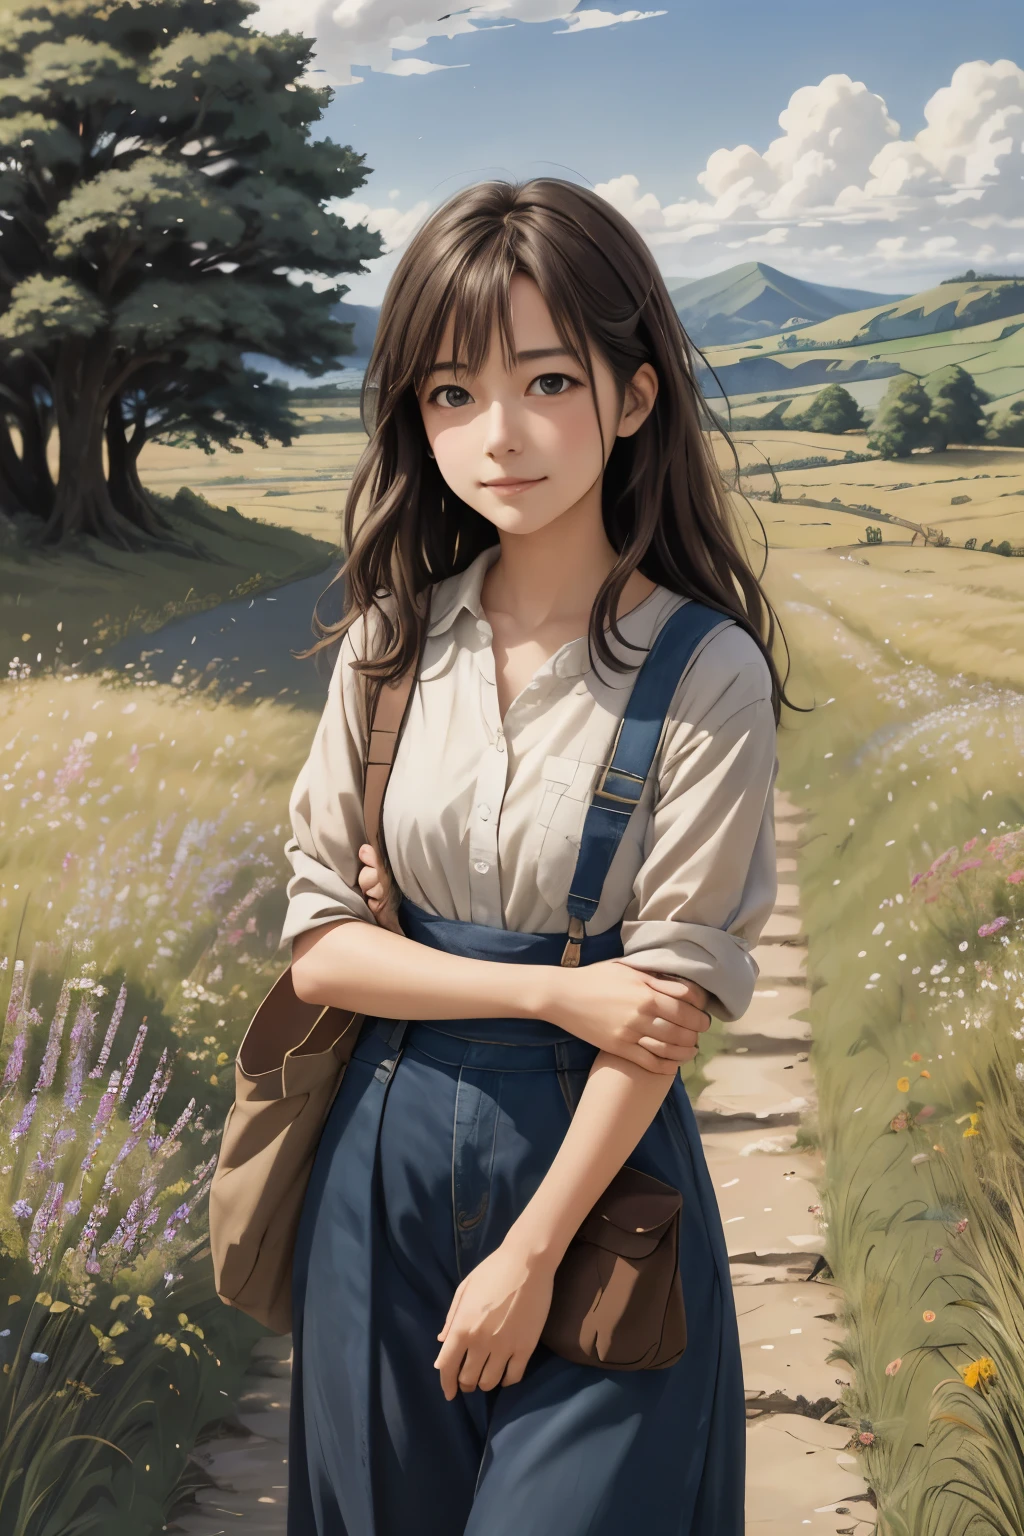 Realistisch, real, wunderschöne und atemberaubende Landschaft Ölgemälde Studio Ghibli Hayao Miyazaki Blütenblätter Grasland blauer Himmel Grasland Landstraße,Gebäude, schönes Mädchen